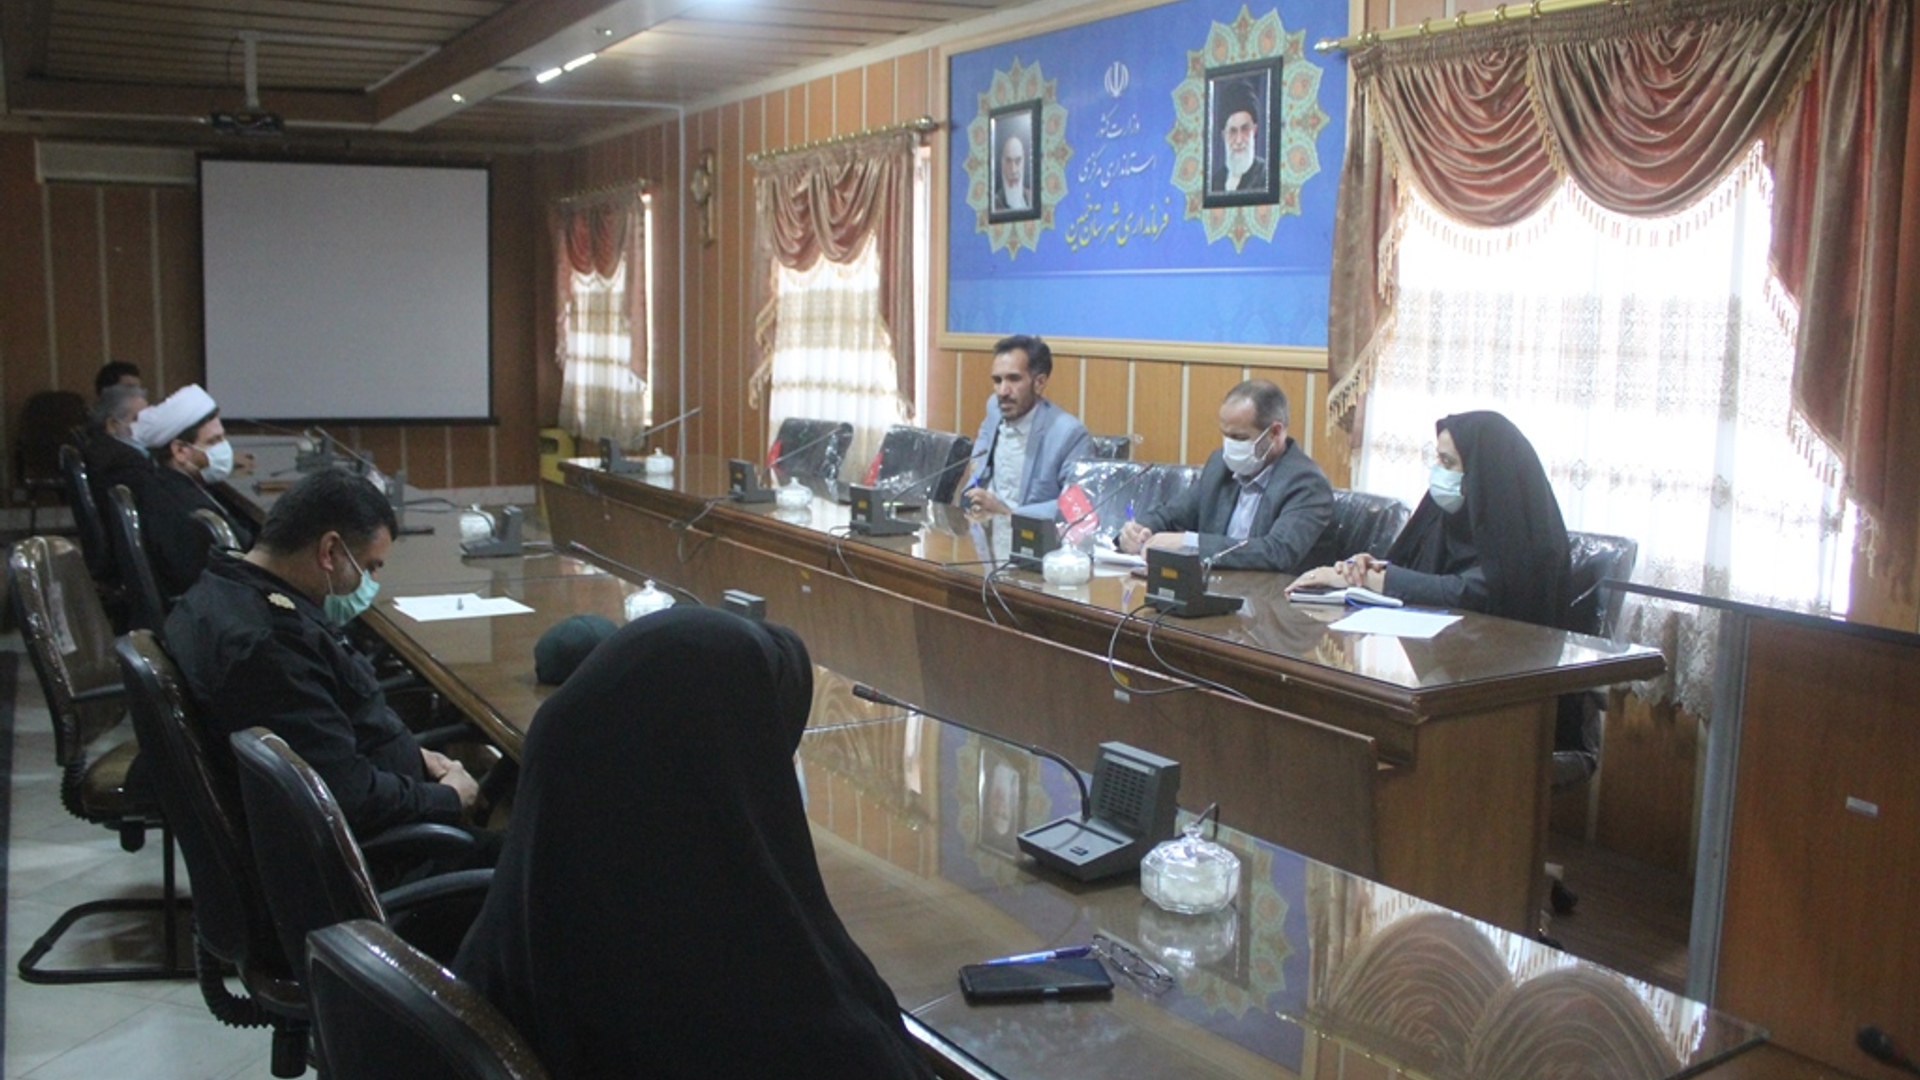 جلسه کارگروه تخصصی امور اجتماعی و فرهنگی ، سلامت ، زنان و خانواده شهرستان خمین برگزار شد  .